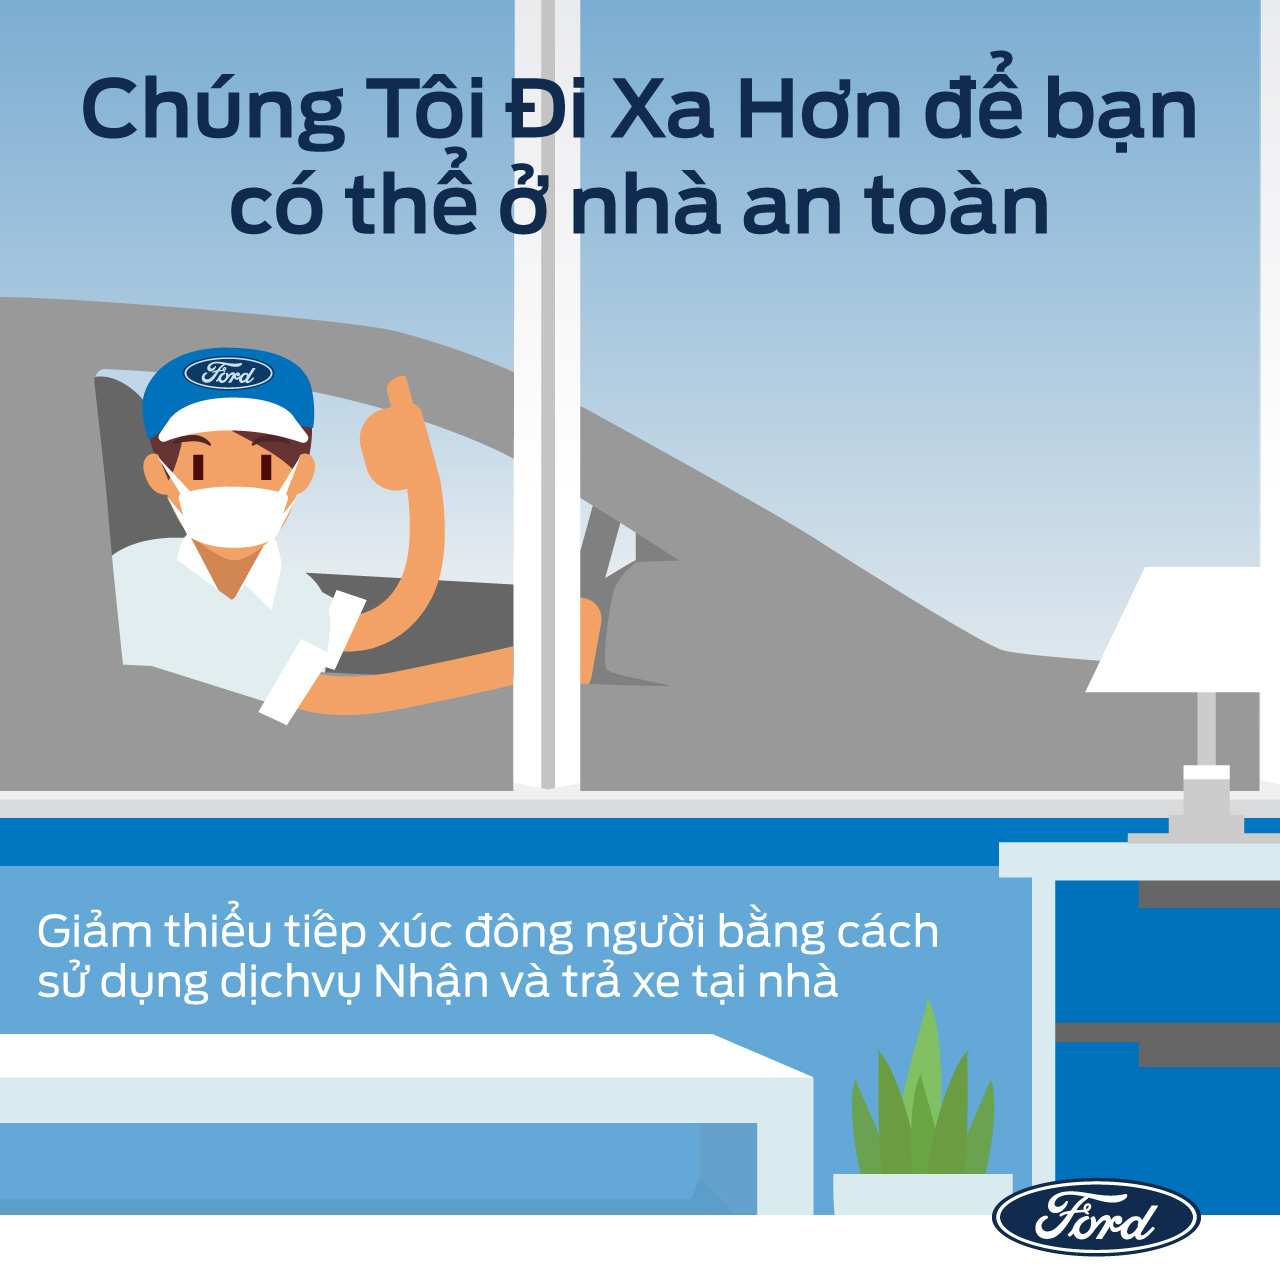 Ford Việt Nam triển khai các dịch vụ hỗ trợ khách hàng an toàn, hiệu quả và thuận tiện trong mùa dịch - 2